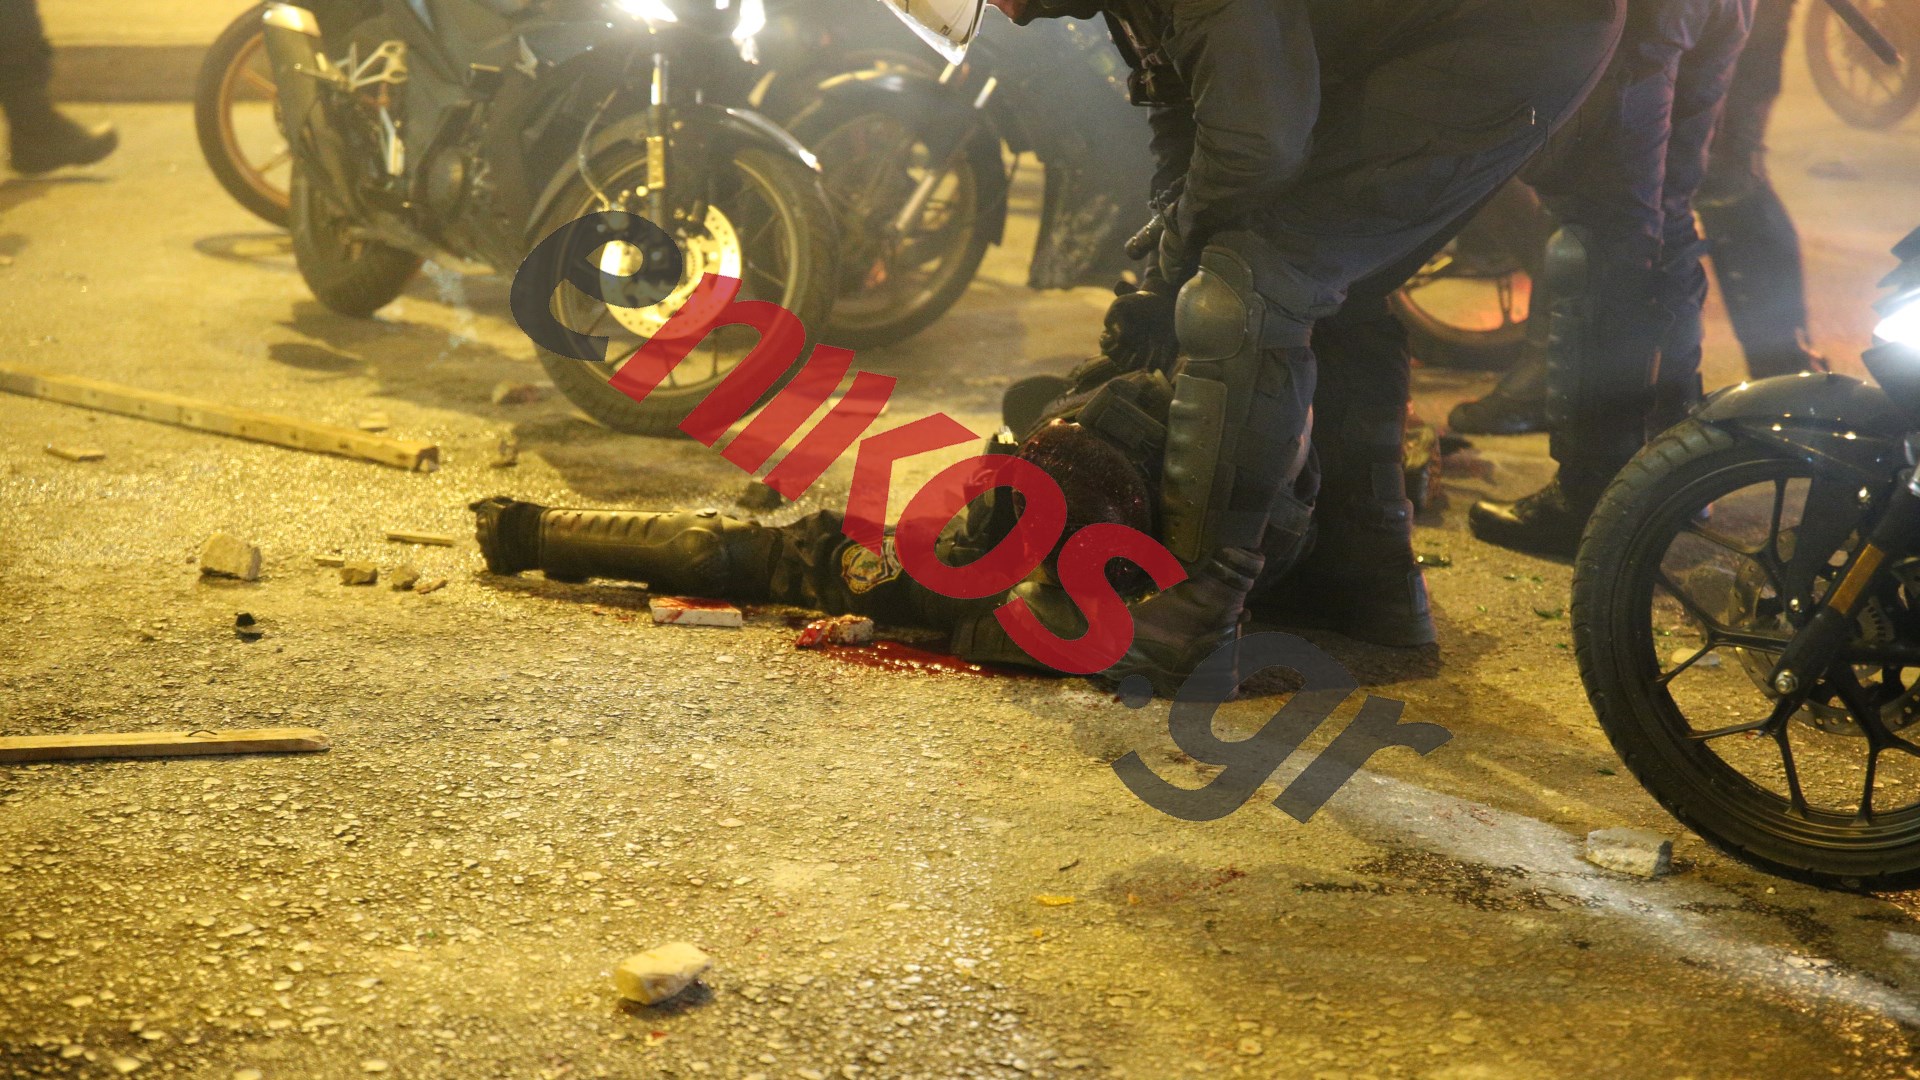 Νέα Σμύρνη: Φωτογραφίες-ντοκουμέντα από τον τραυματισμό του αστυνομικού